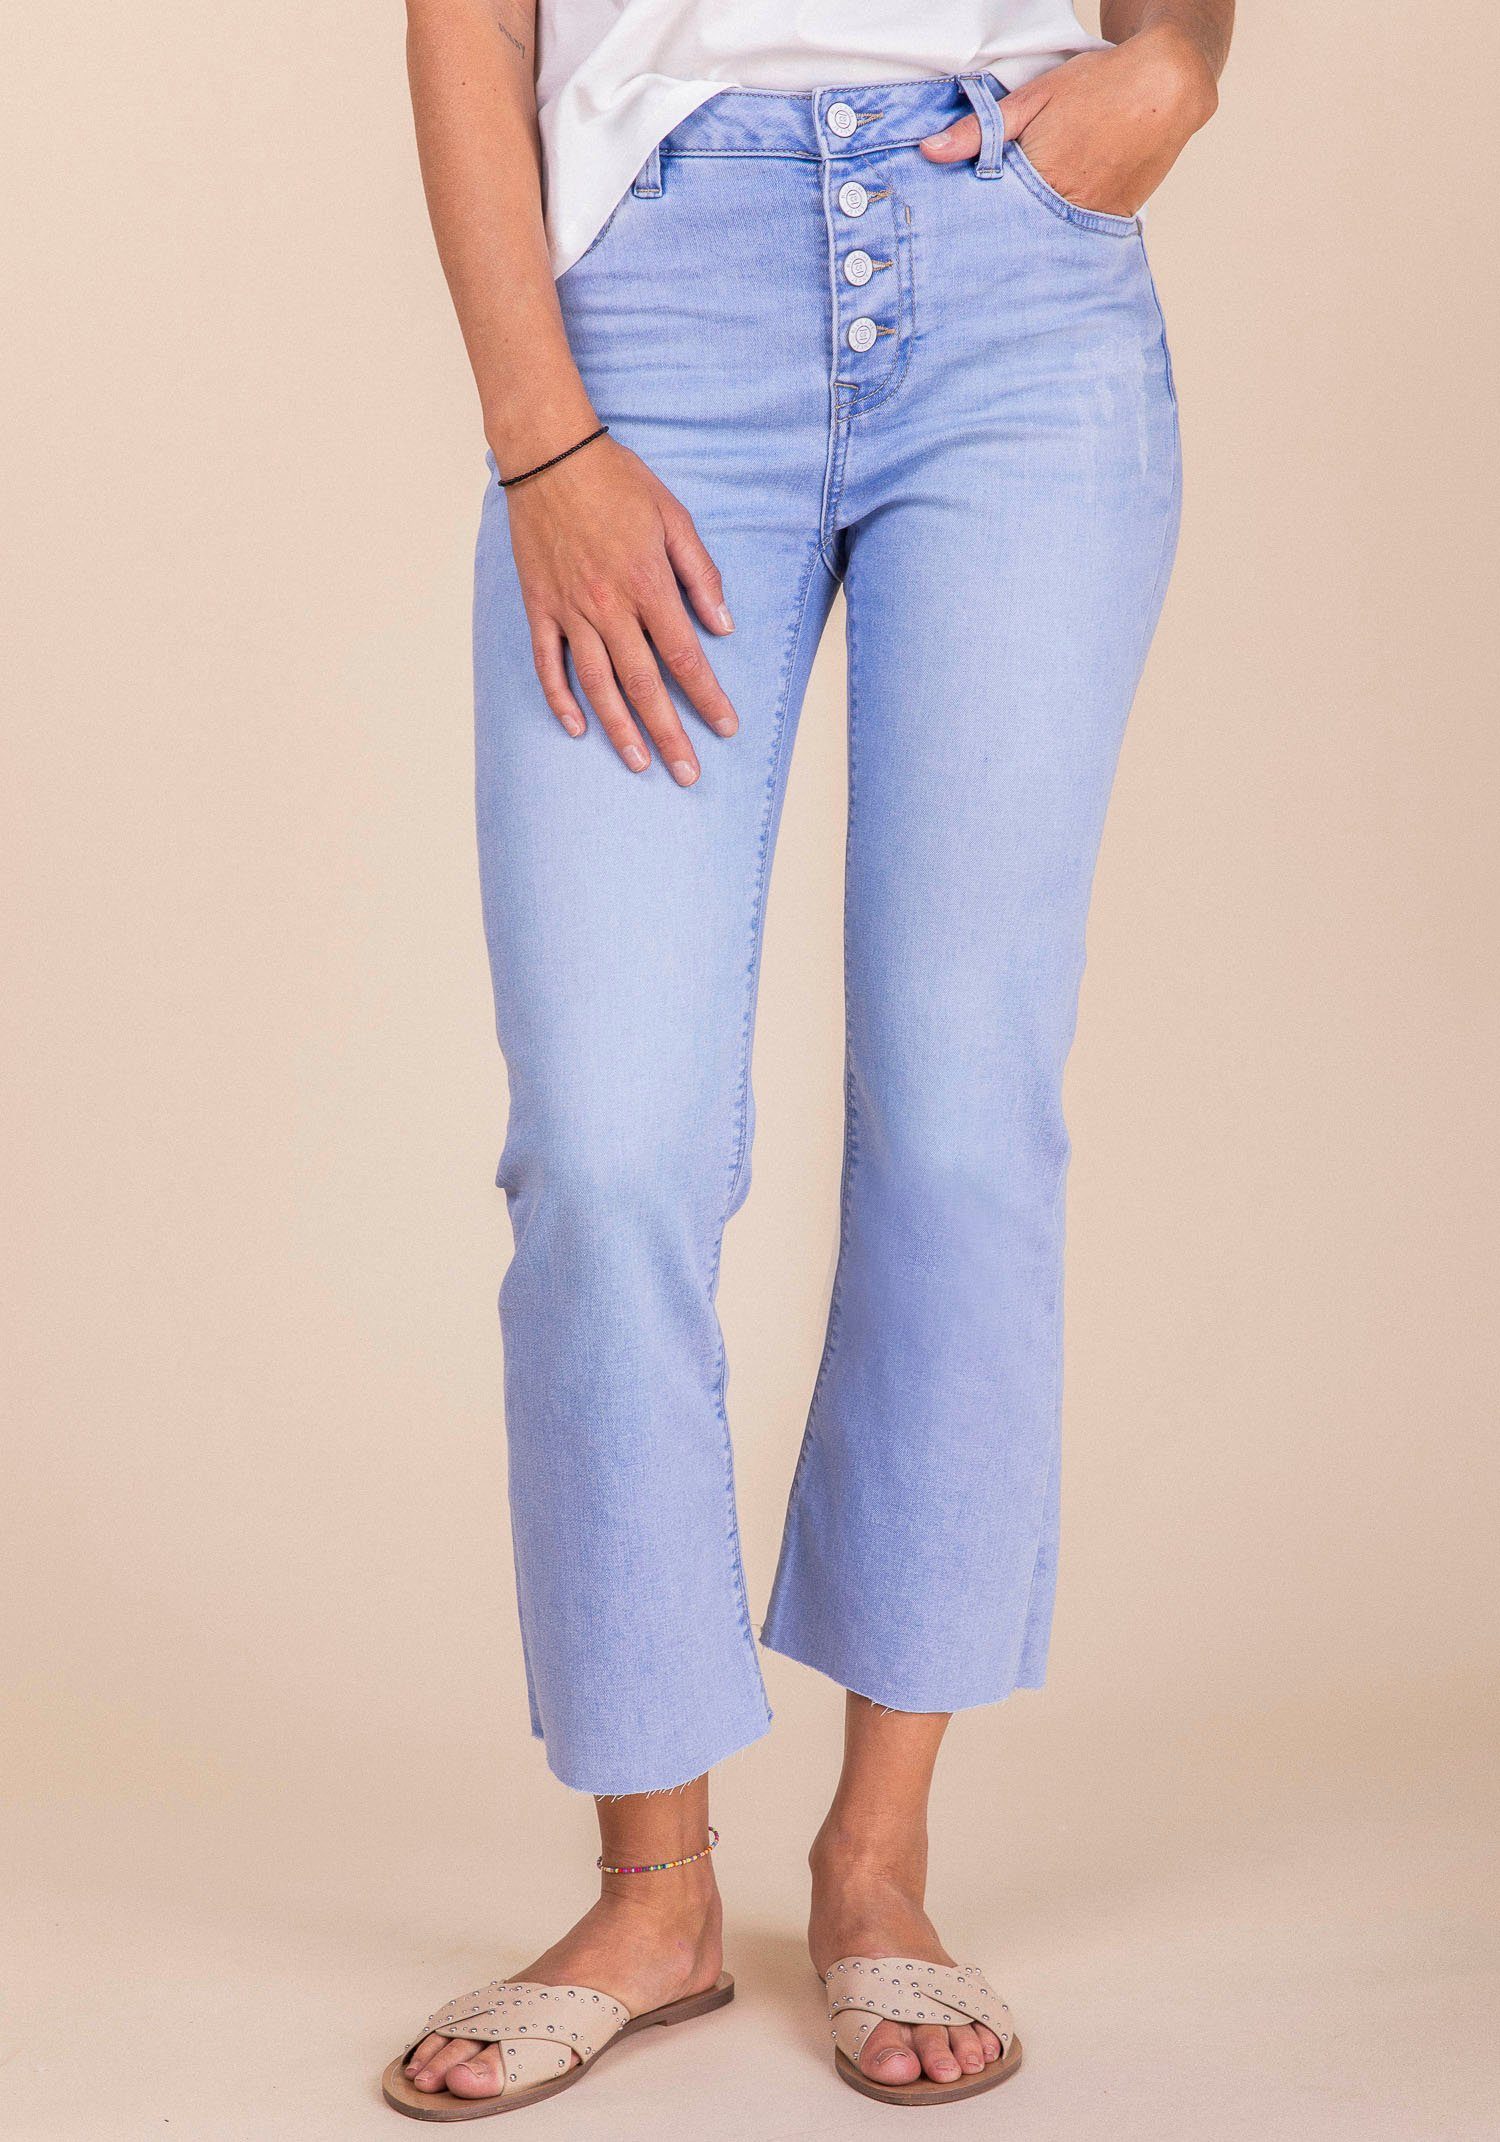 Damen Jeans BLUE FIRE Ankle-Jeans EMMA mit leicht ausgefranster Kante am Beinabschluss